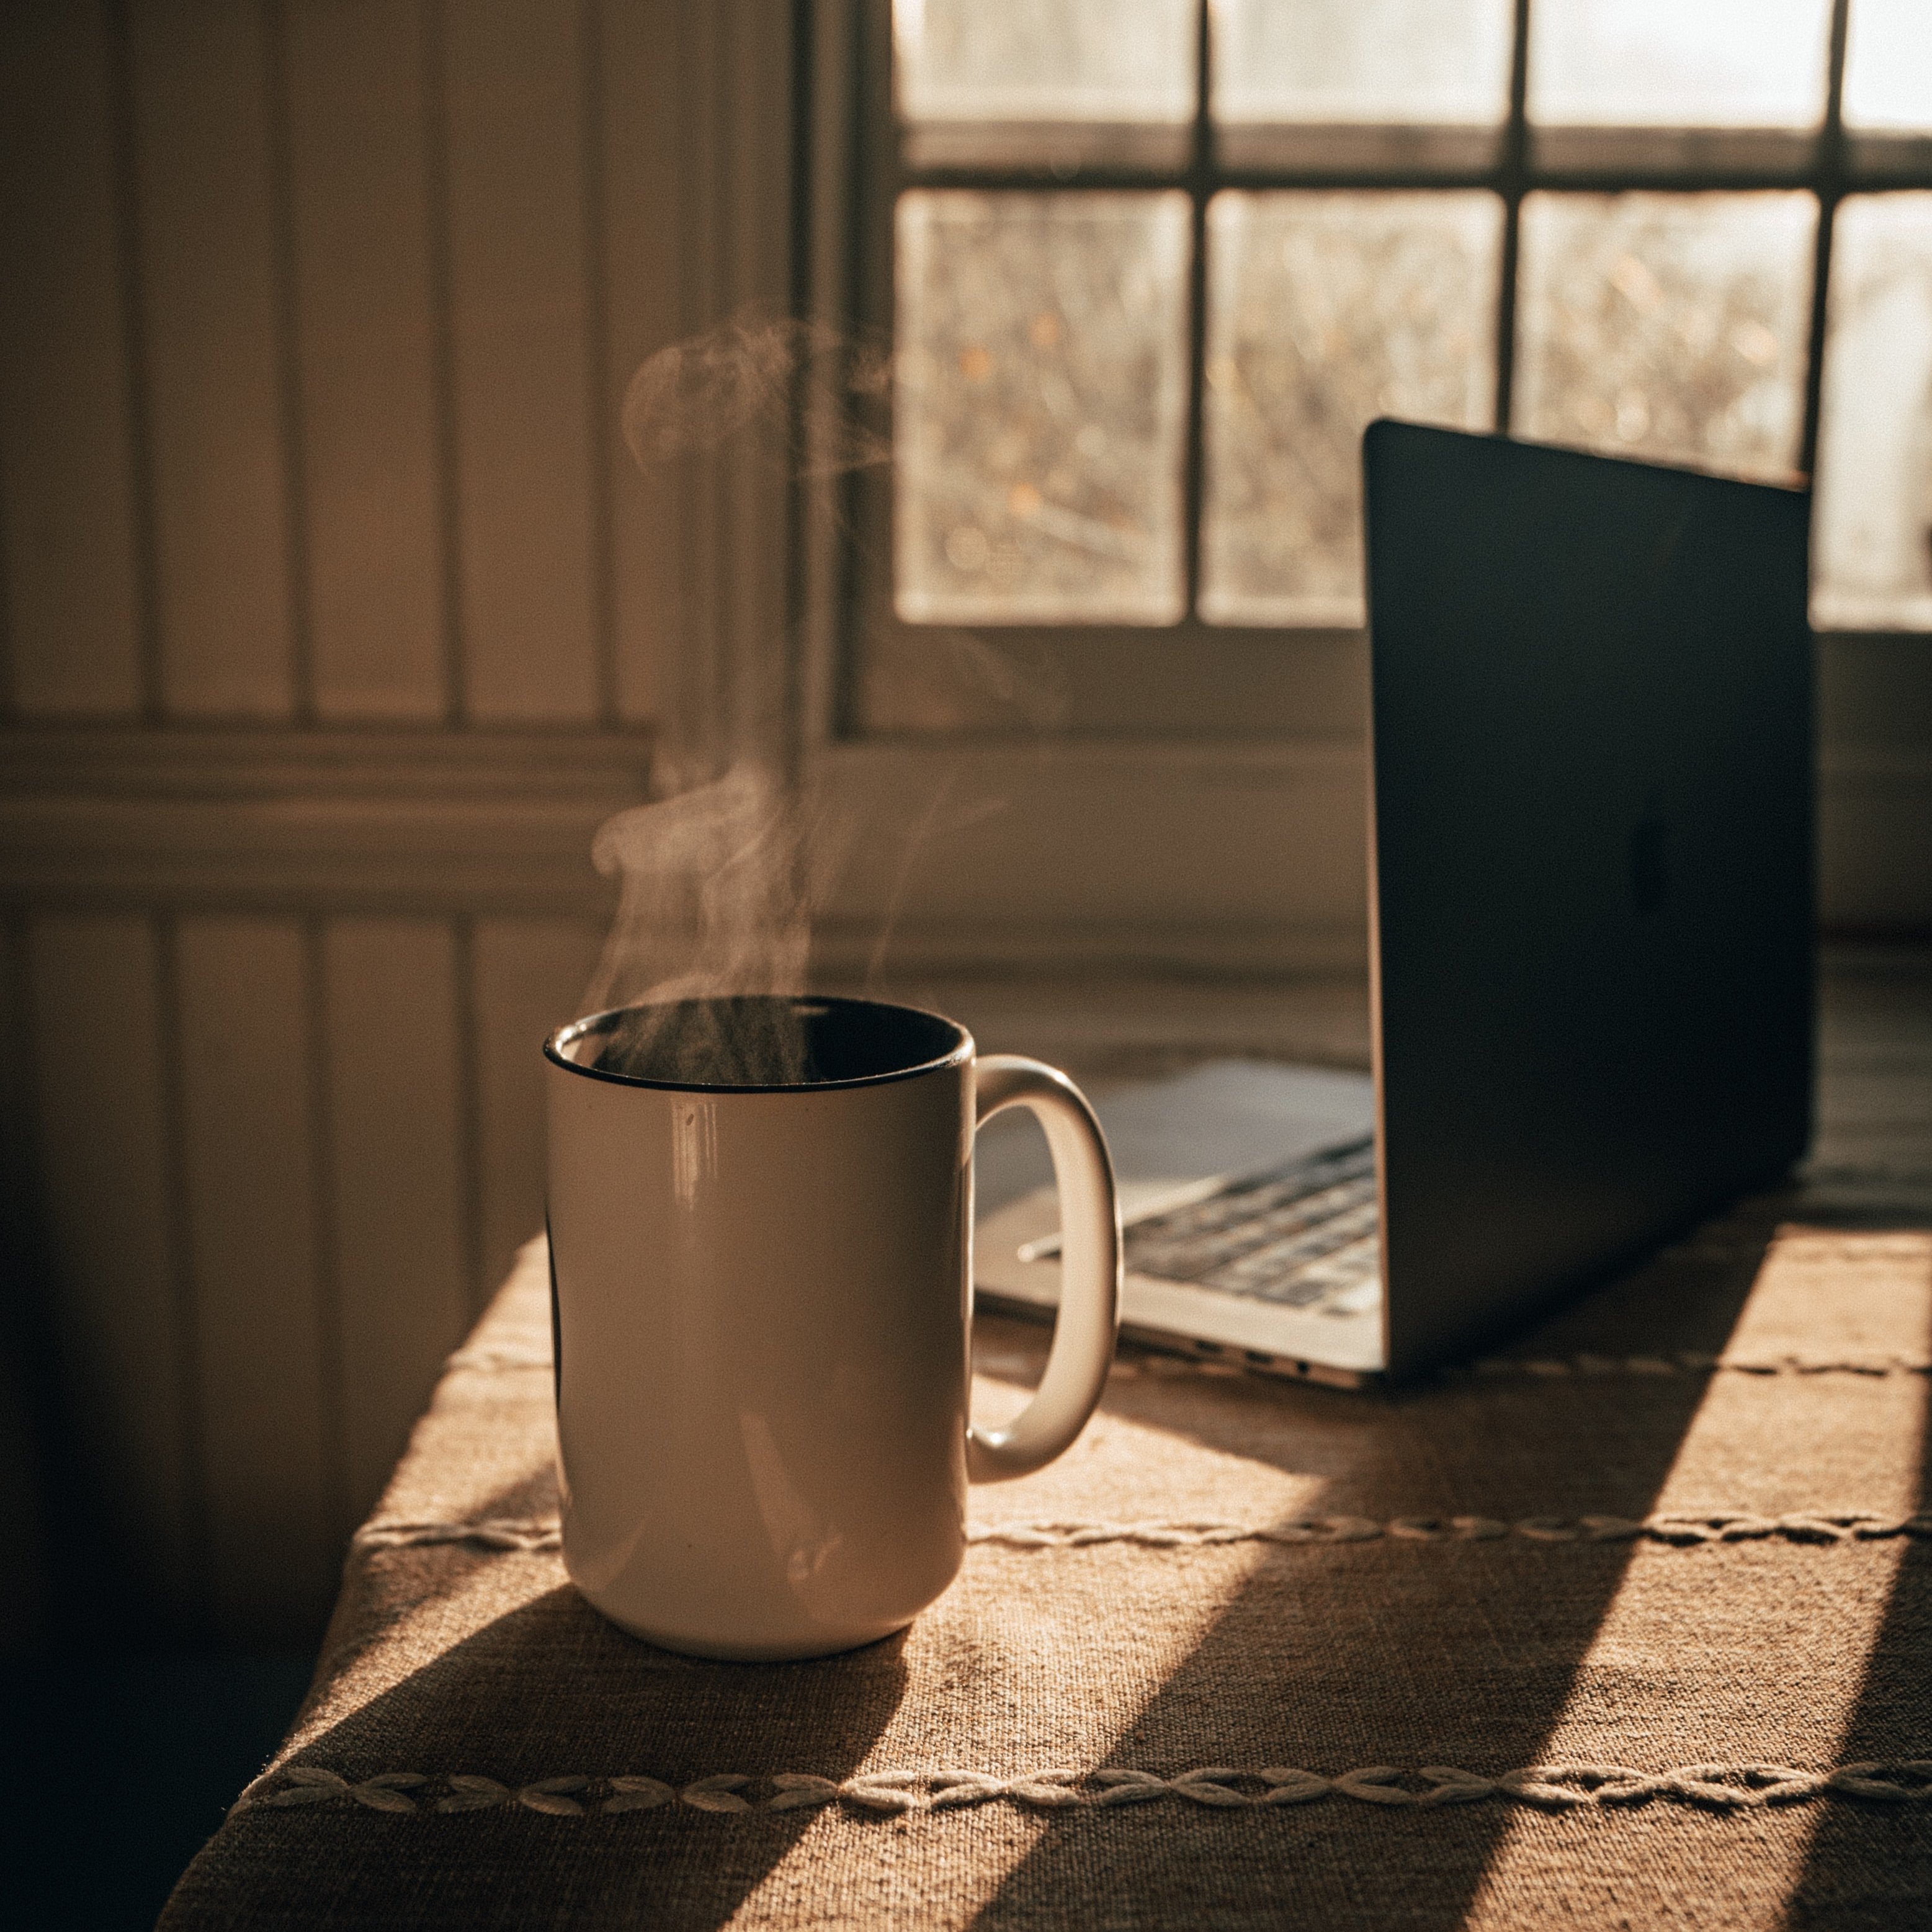 Tổng hợp 70 hình nền cà phê ảnh nền coffee cho máy tính laptop